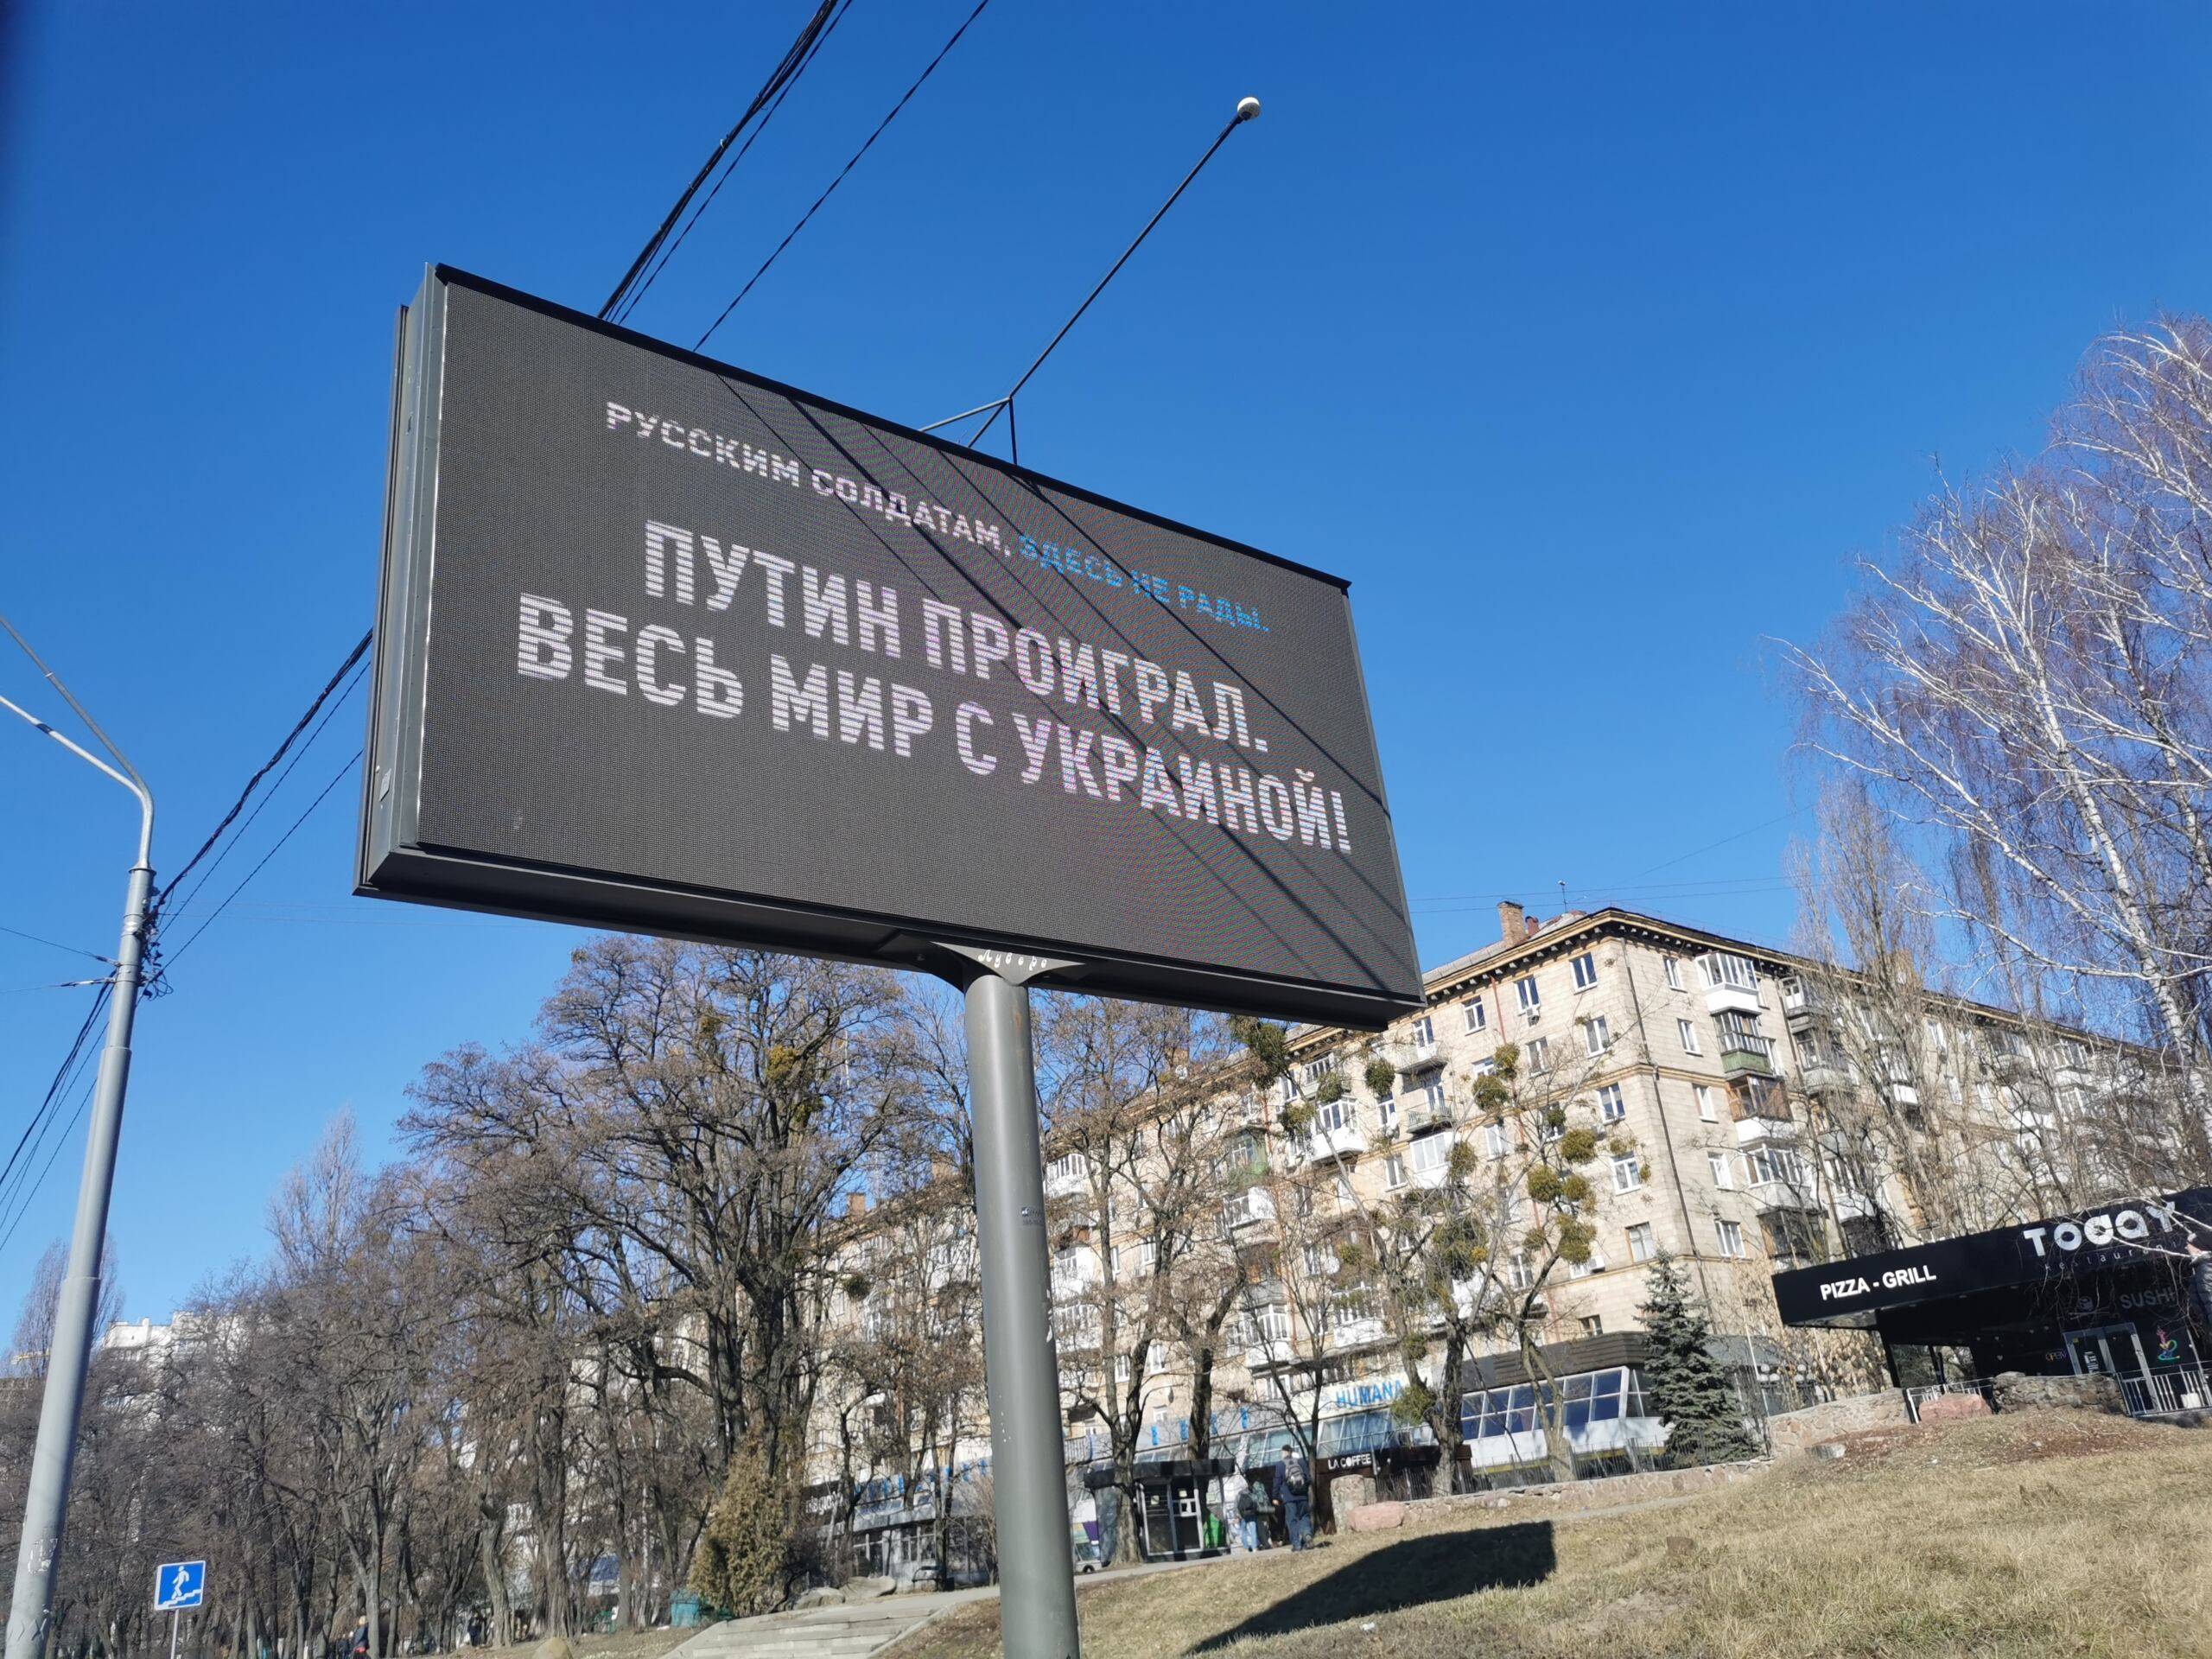 Tablica z rosyjskim napisem "Putin proigrał, wies mir z Ukrainoj", czyli "Putin przegrał, cały świat z Ukrainą"